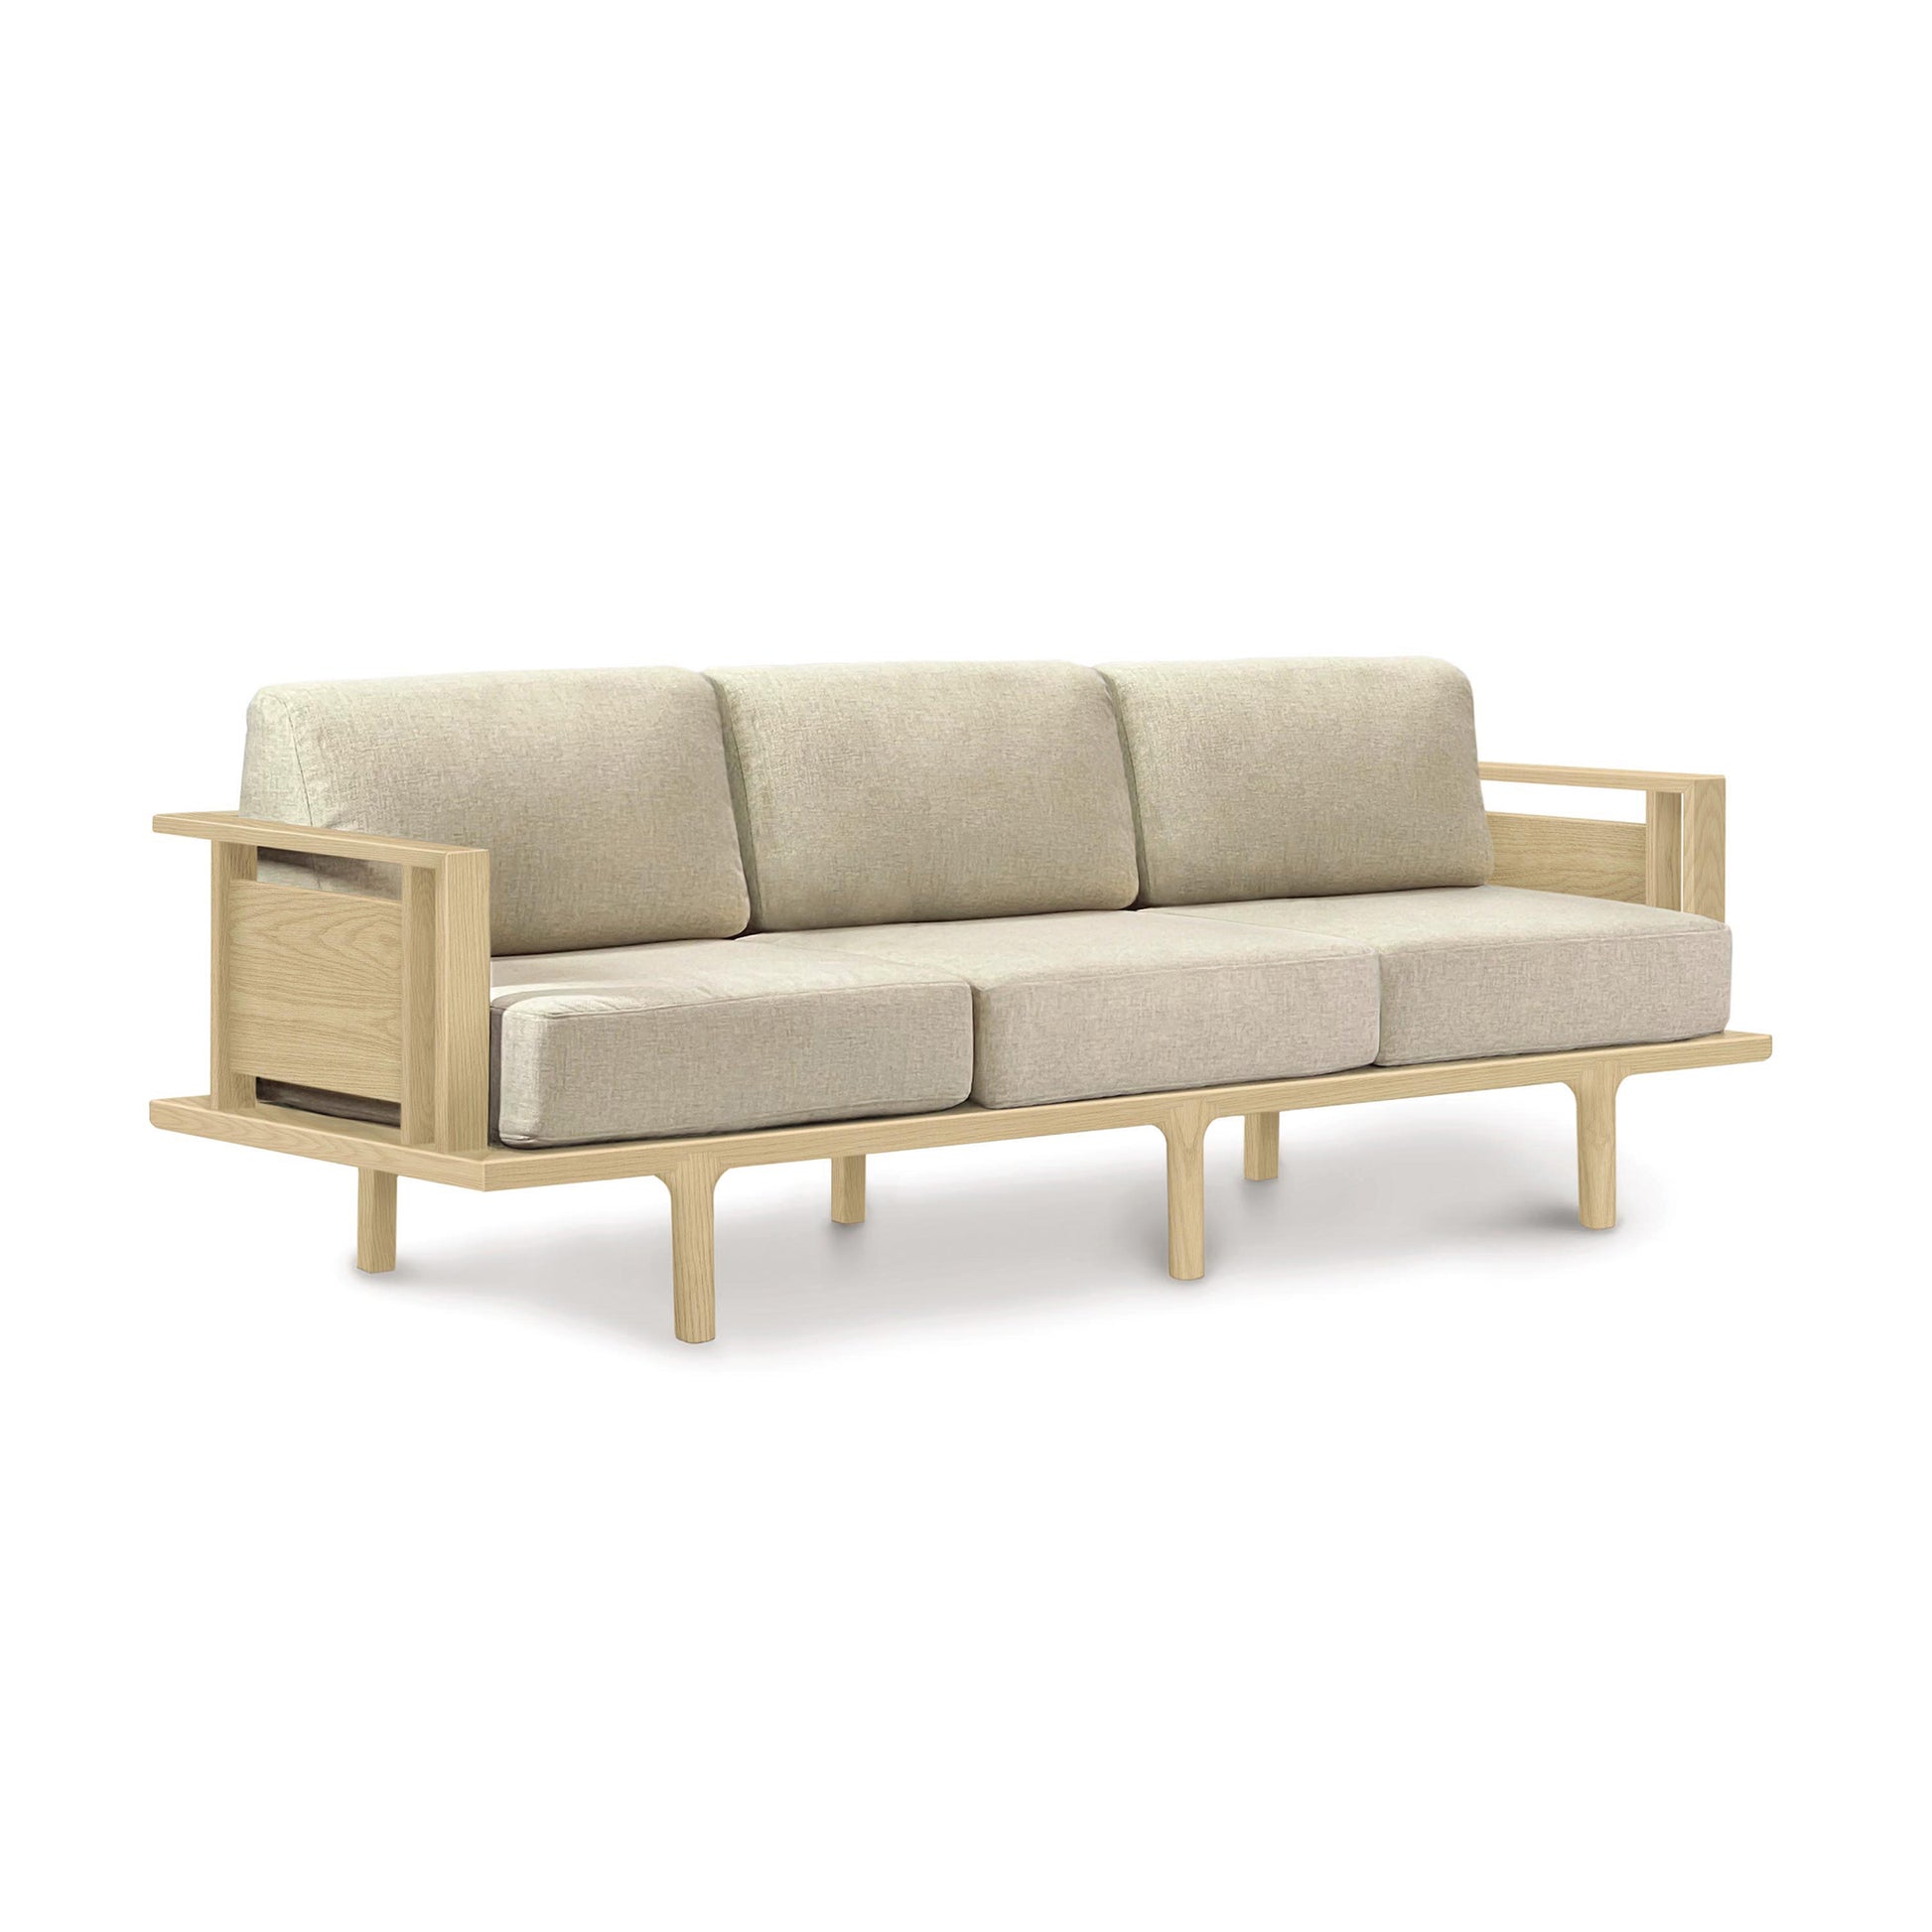 A Copeland Furniture Sierra Oak upholstered sofa with beige cushions.